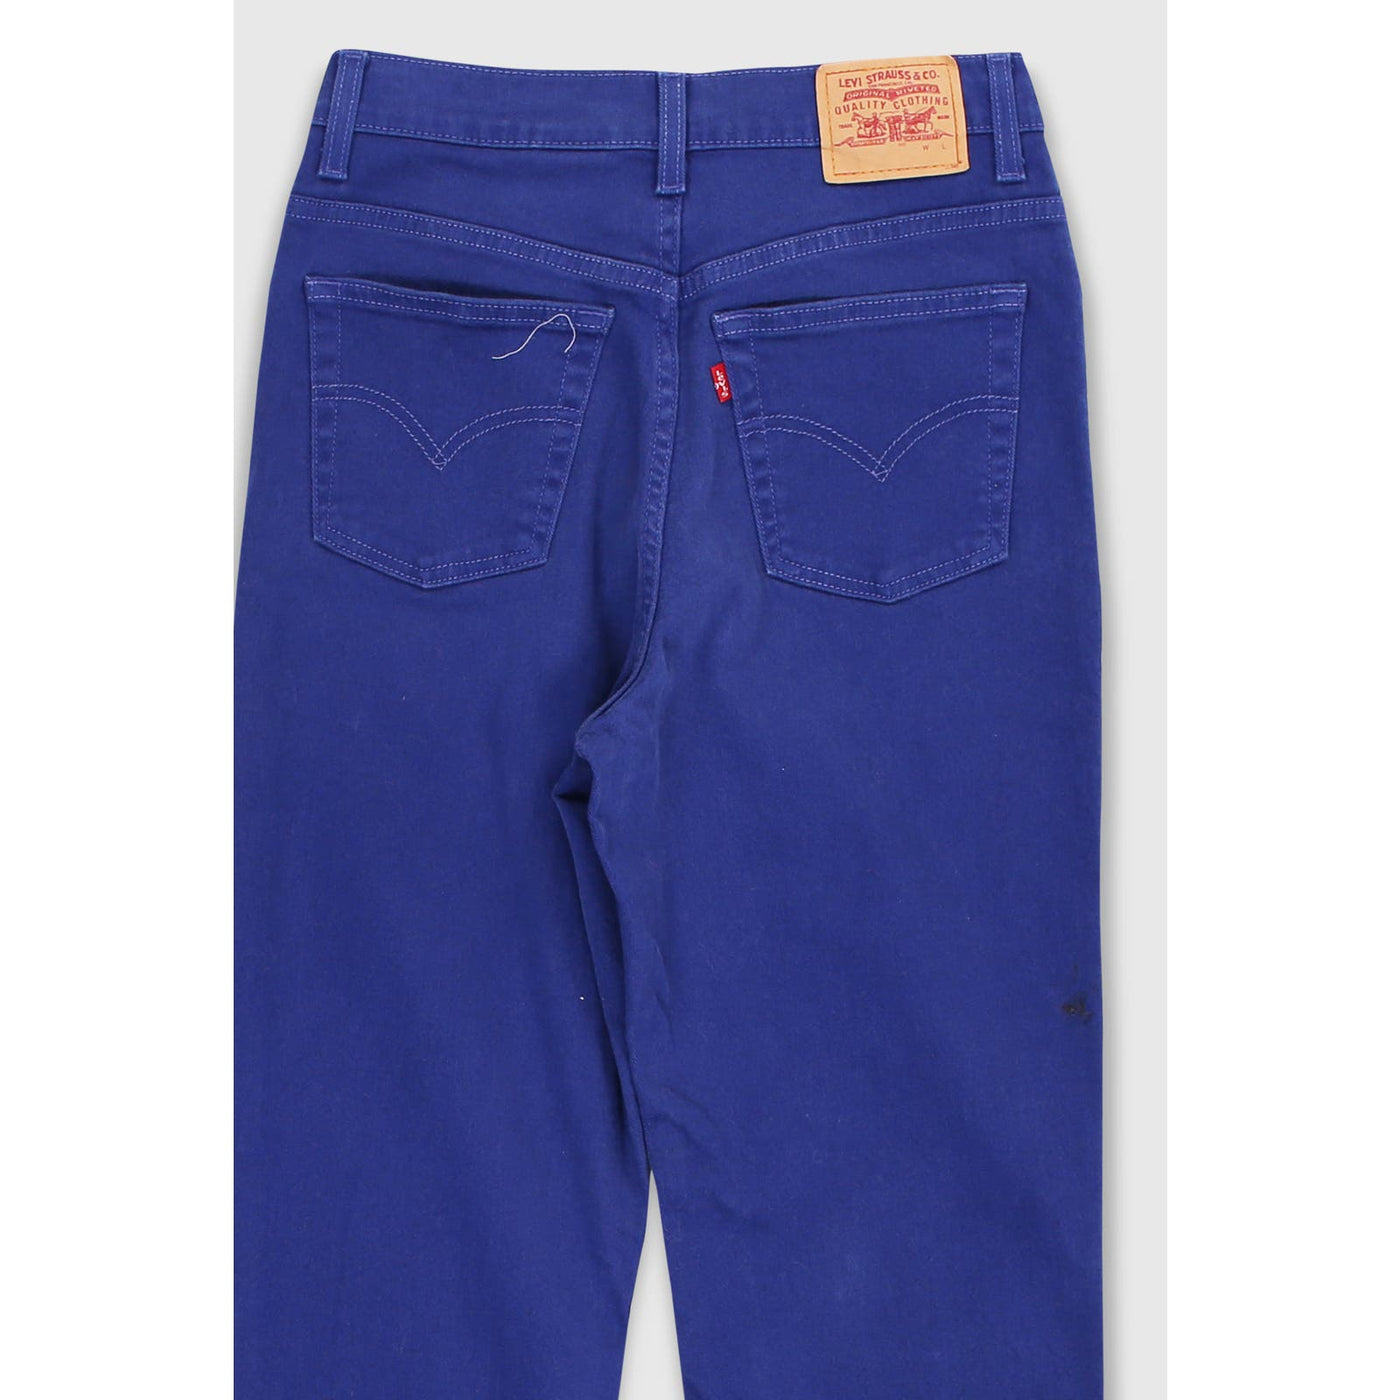 Vintage 90s Levi’s 512 Blue Jeans